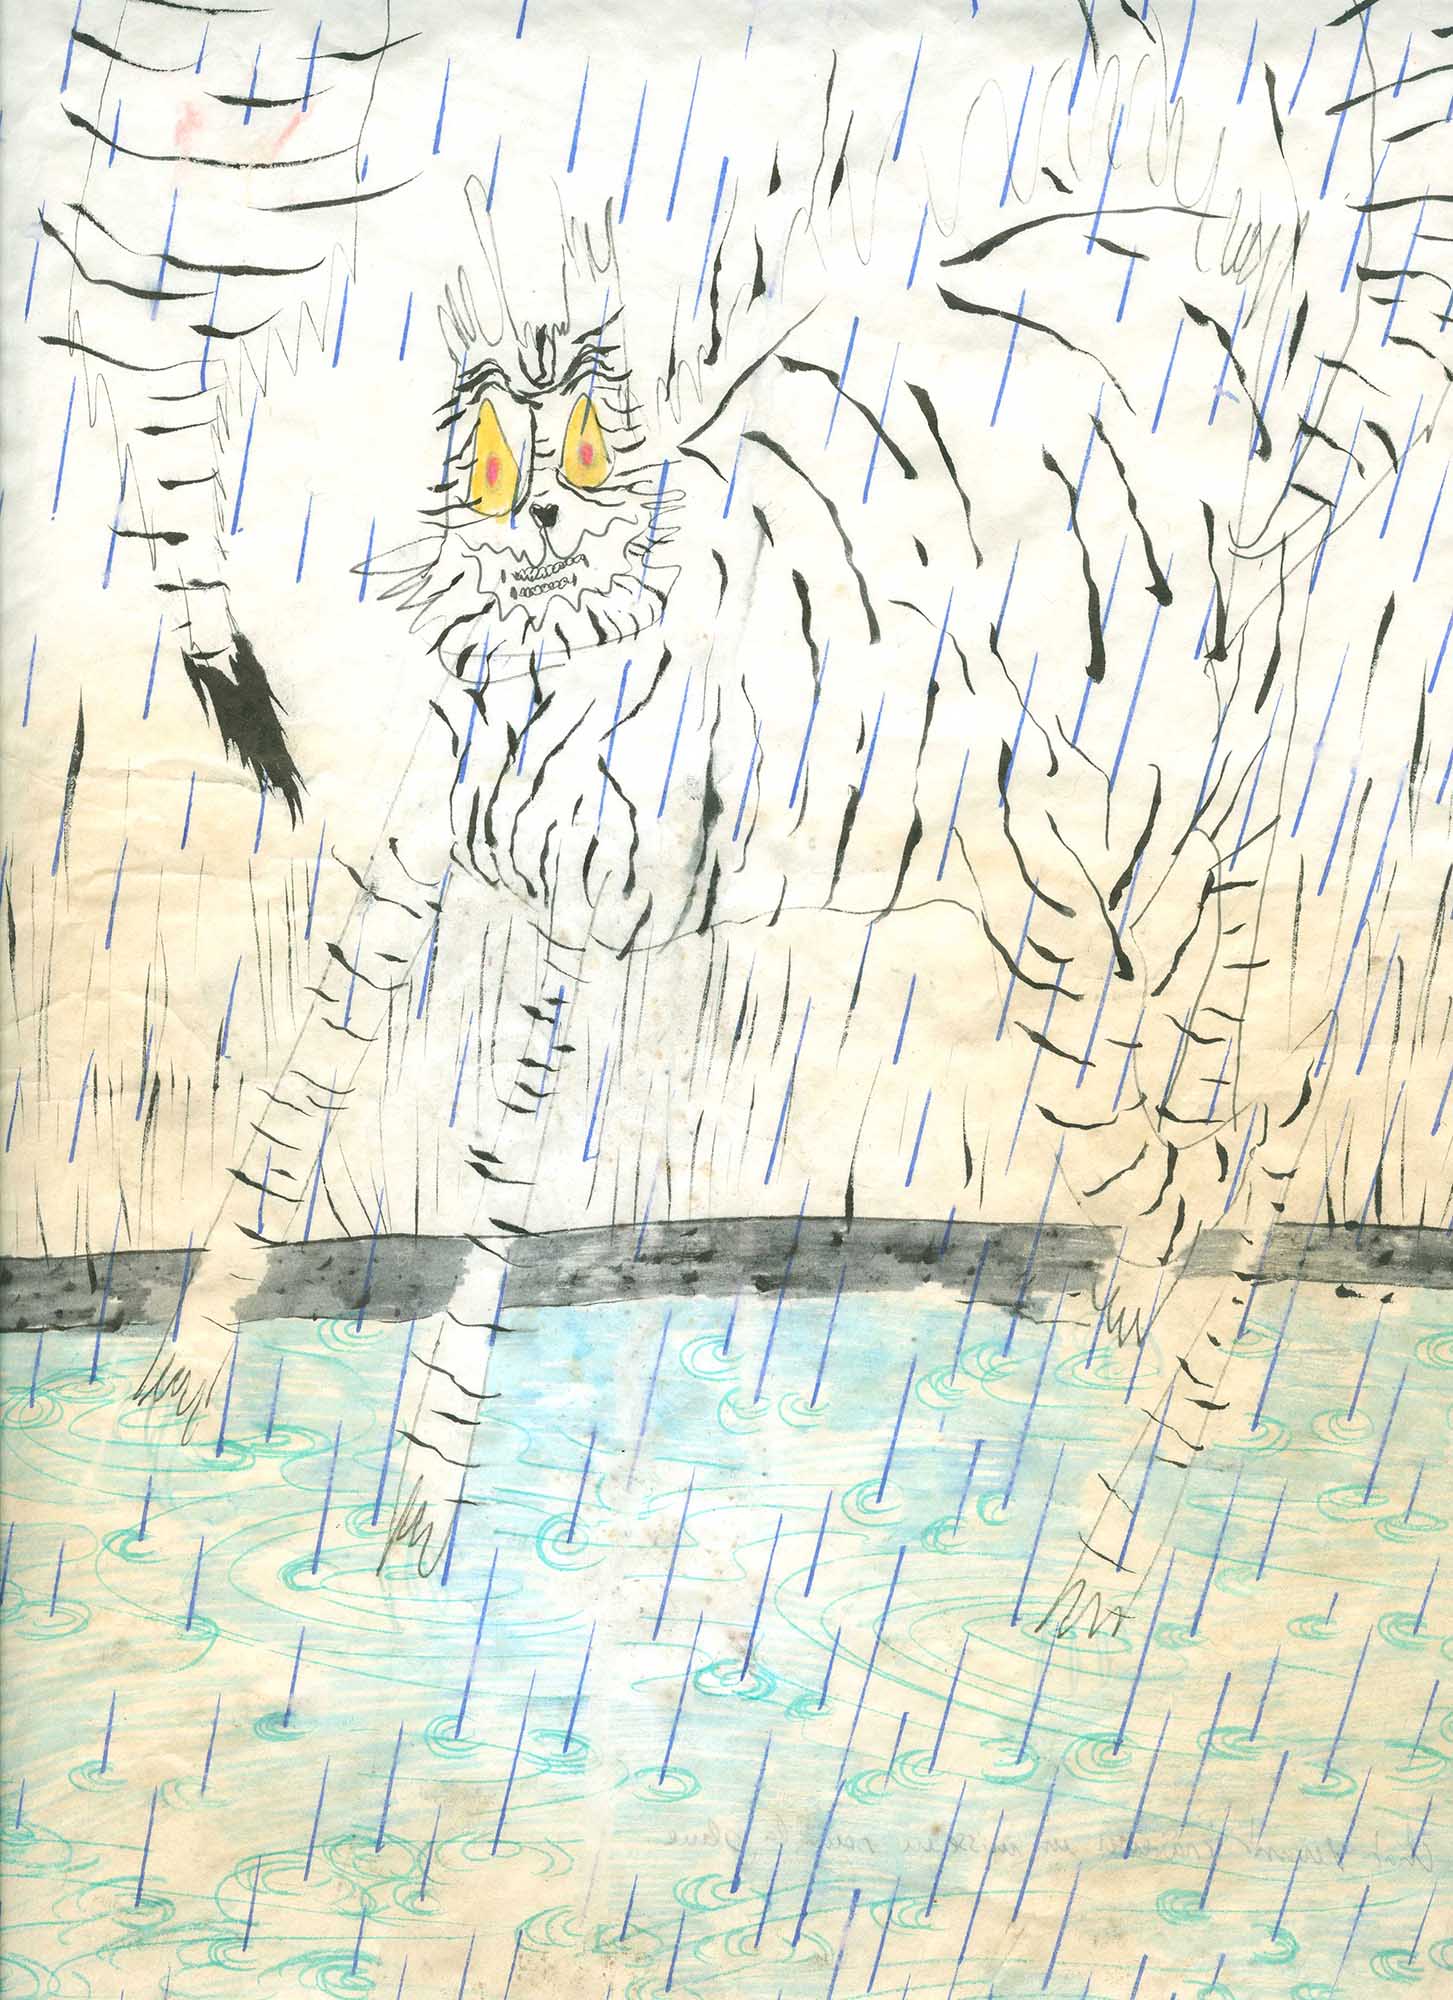 Chat traversant une flaque d’eau,
feutre sur papier
21 x 29,7 cm